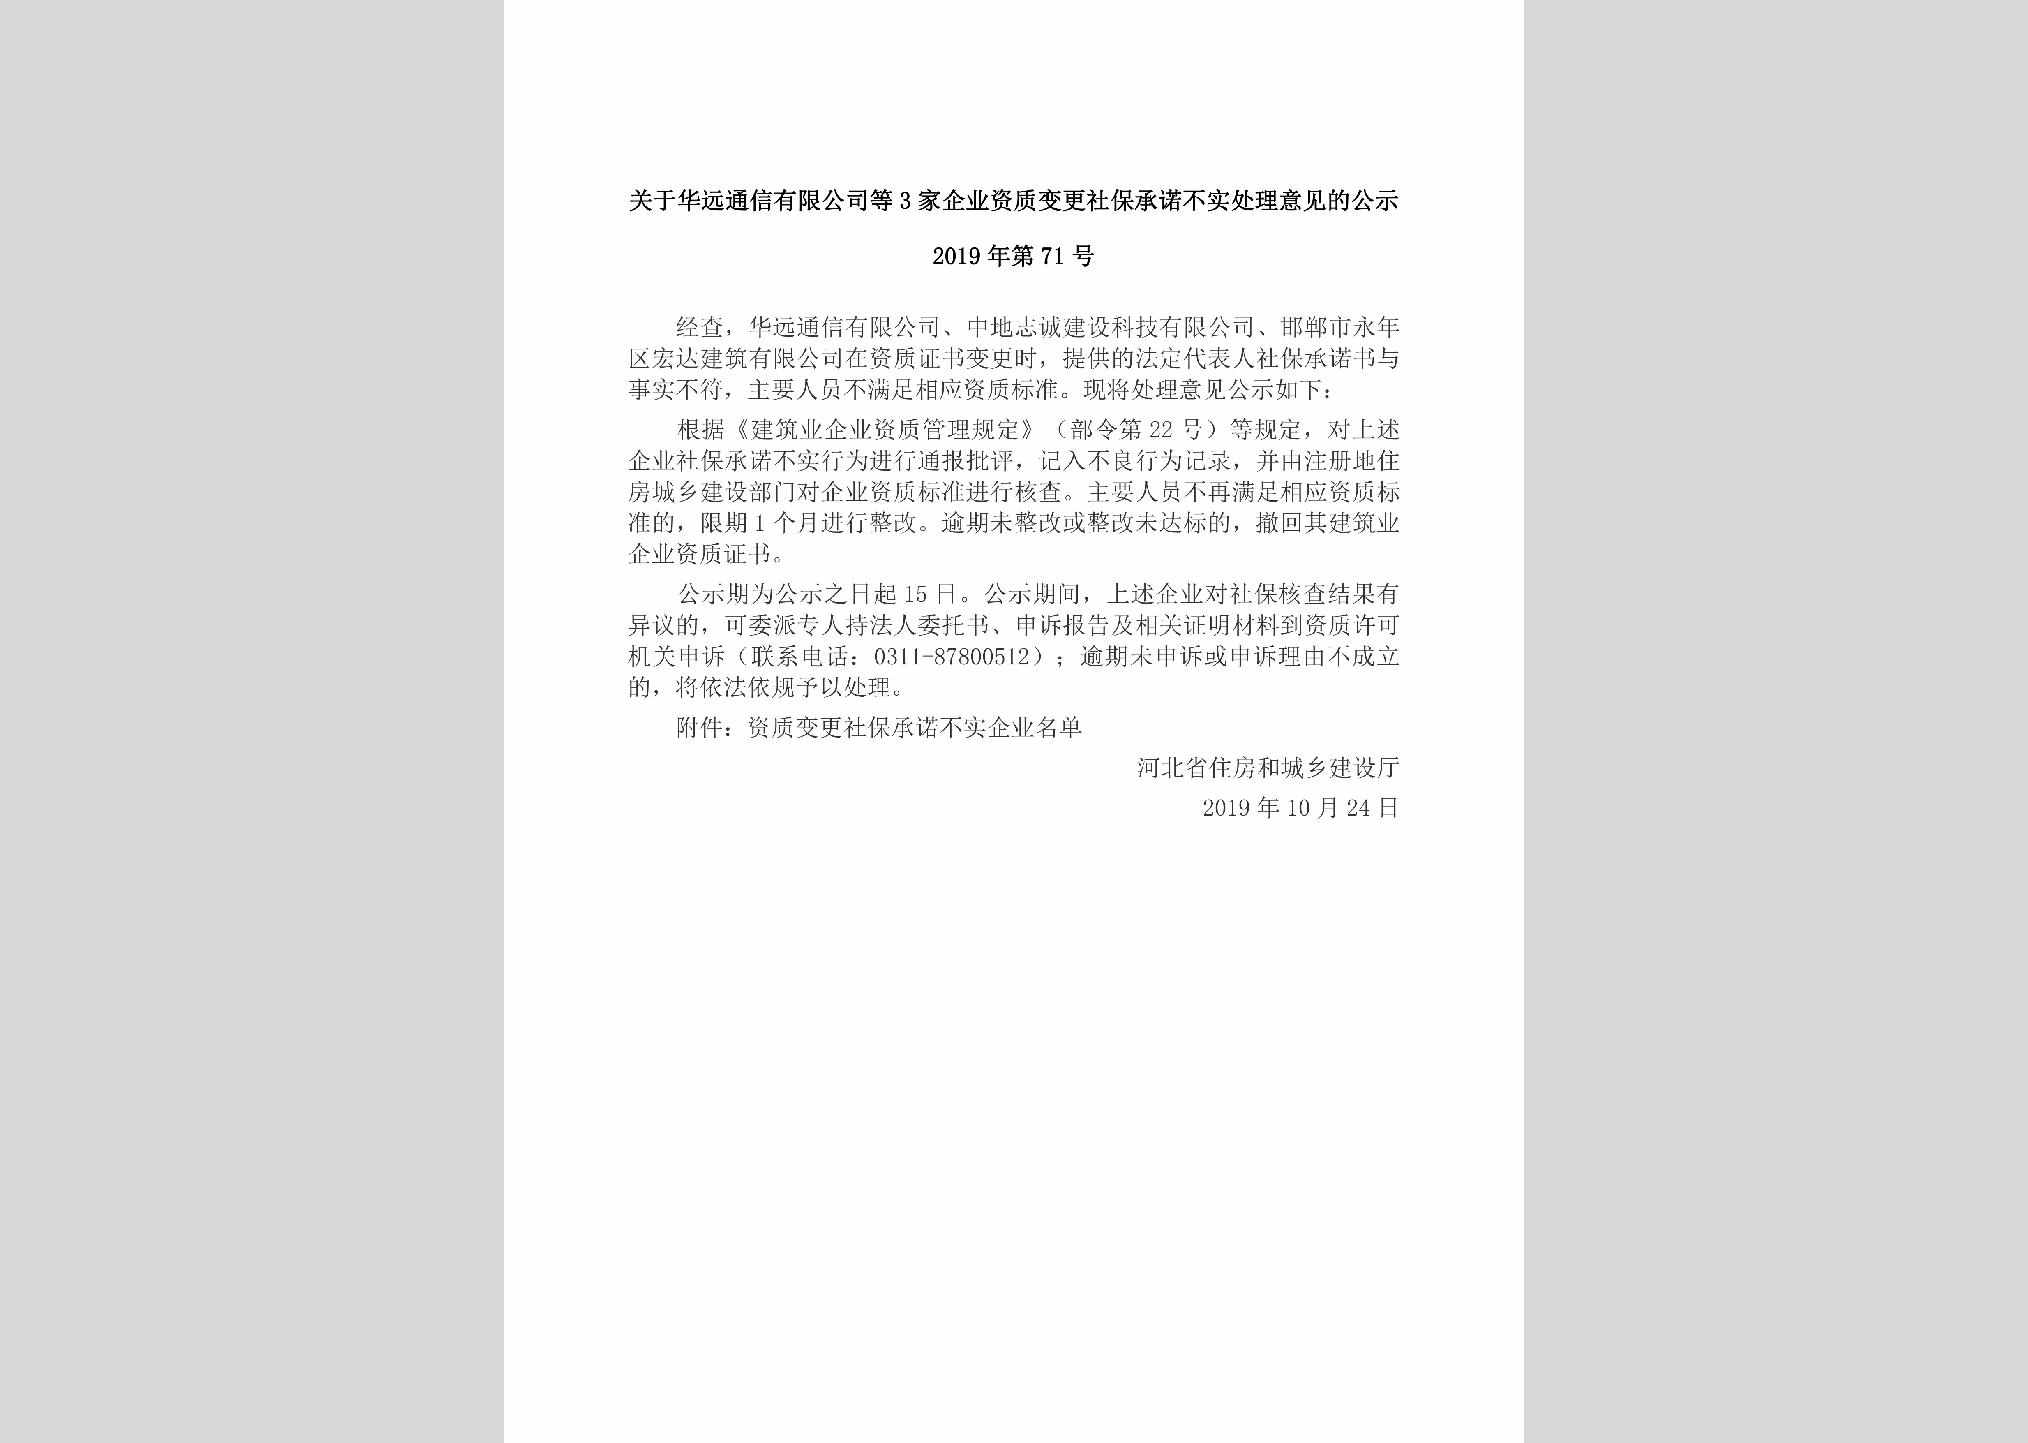 2019年第71号：关于华远通信有限公司等3家企业资质变更社保承诺不实处理意见的公示